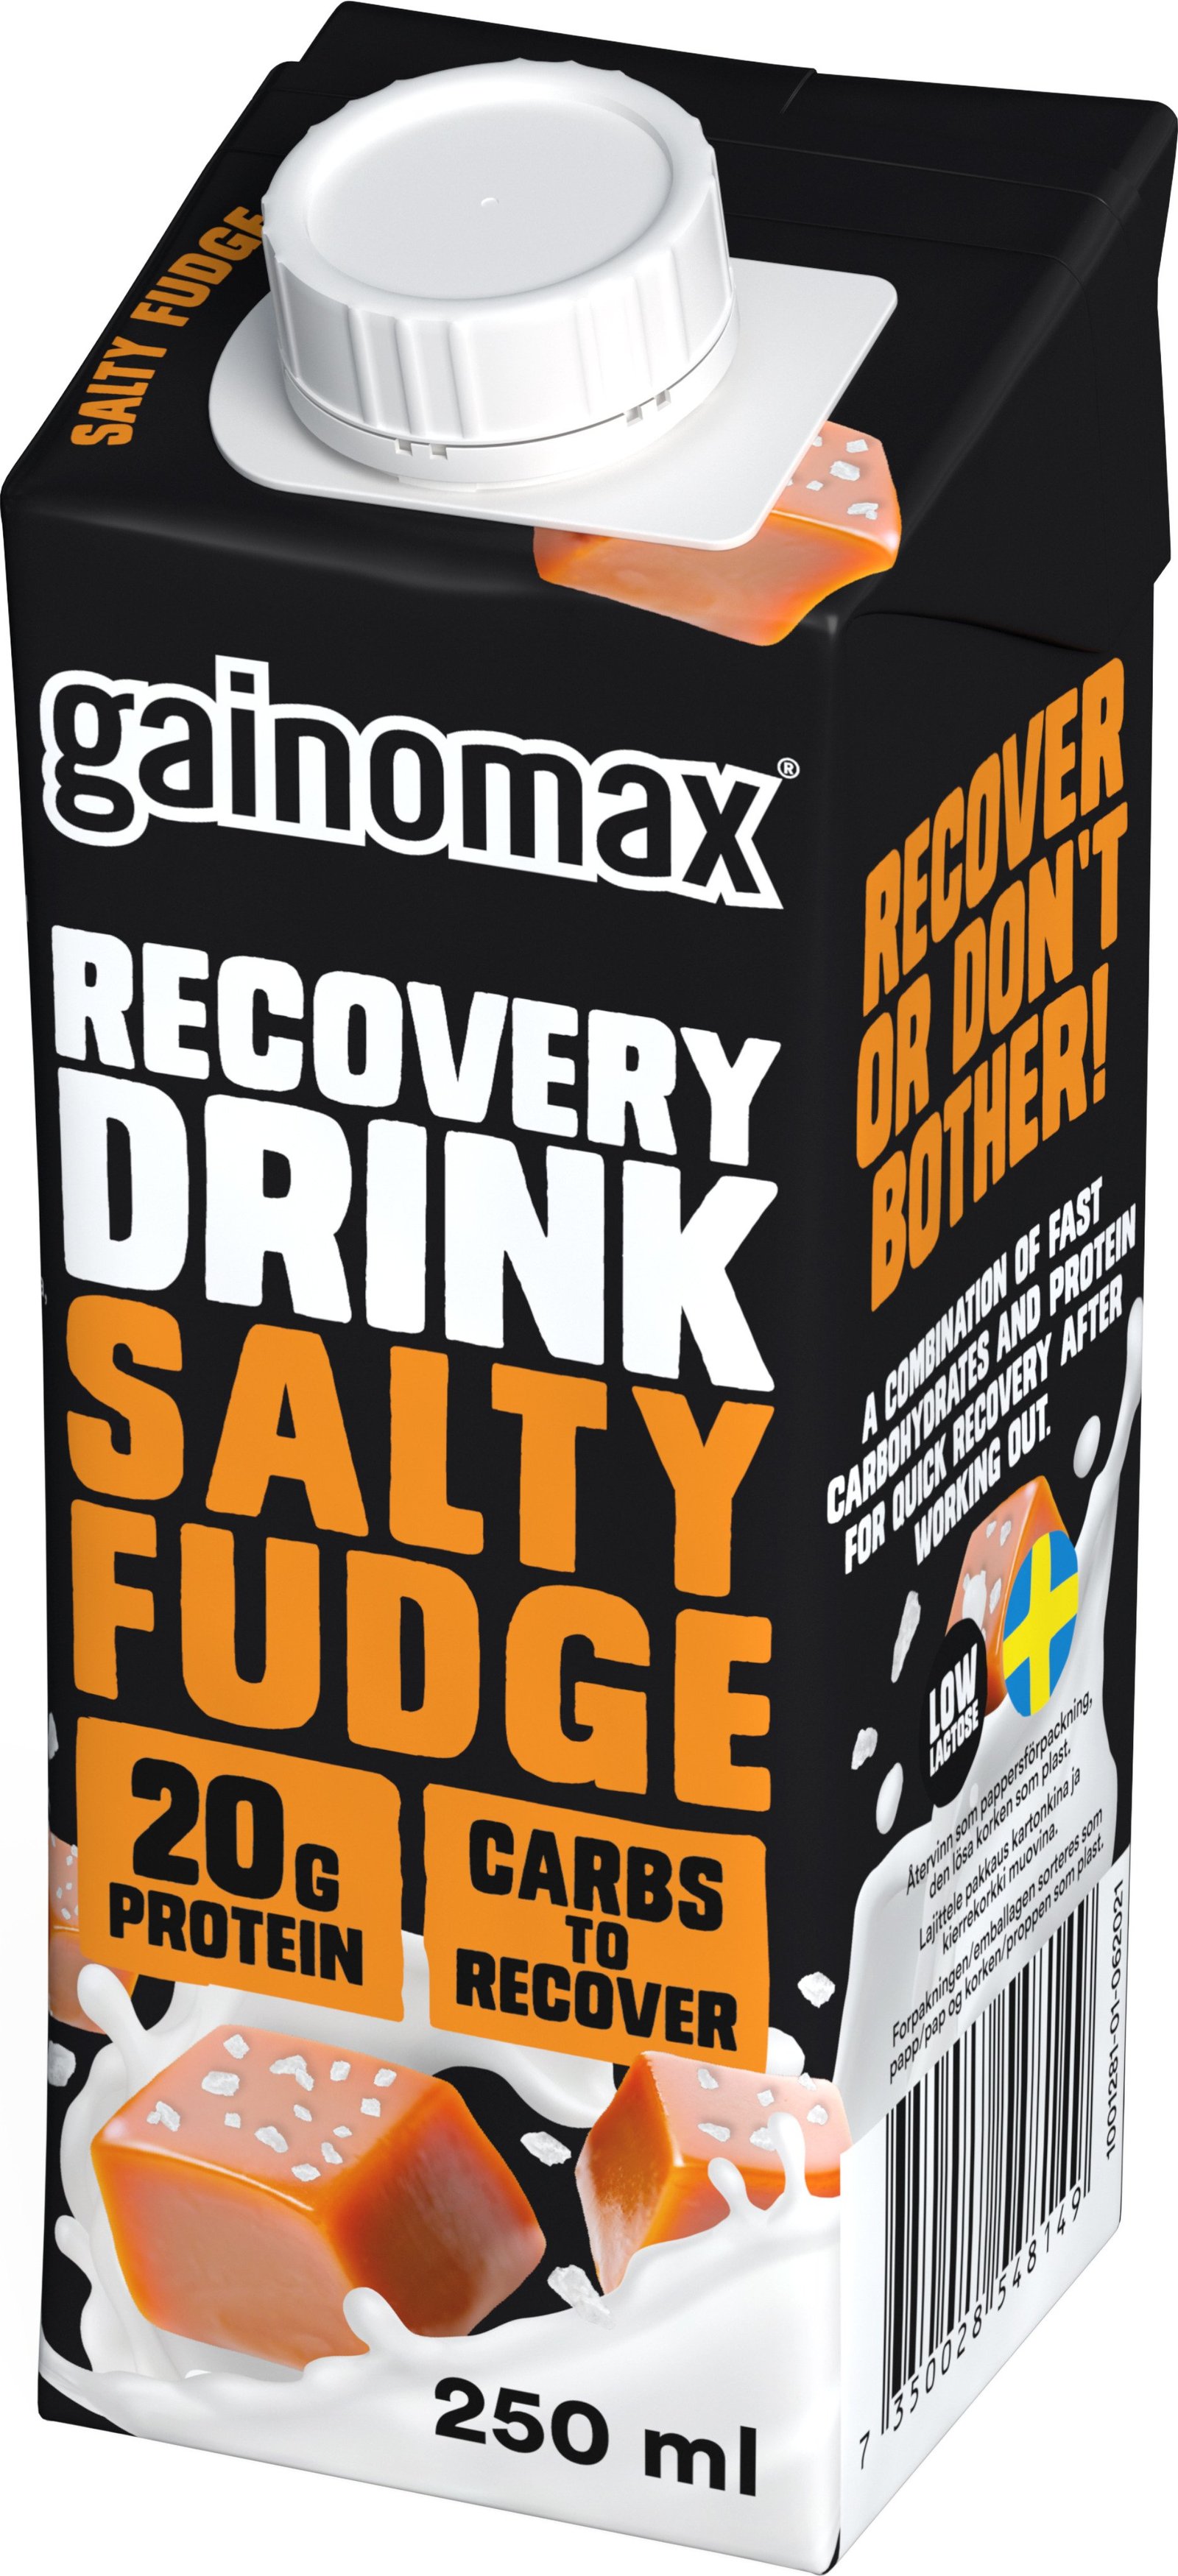 Gainomax Recovery Drink Salty Fudge 250 ml